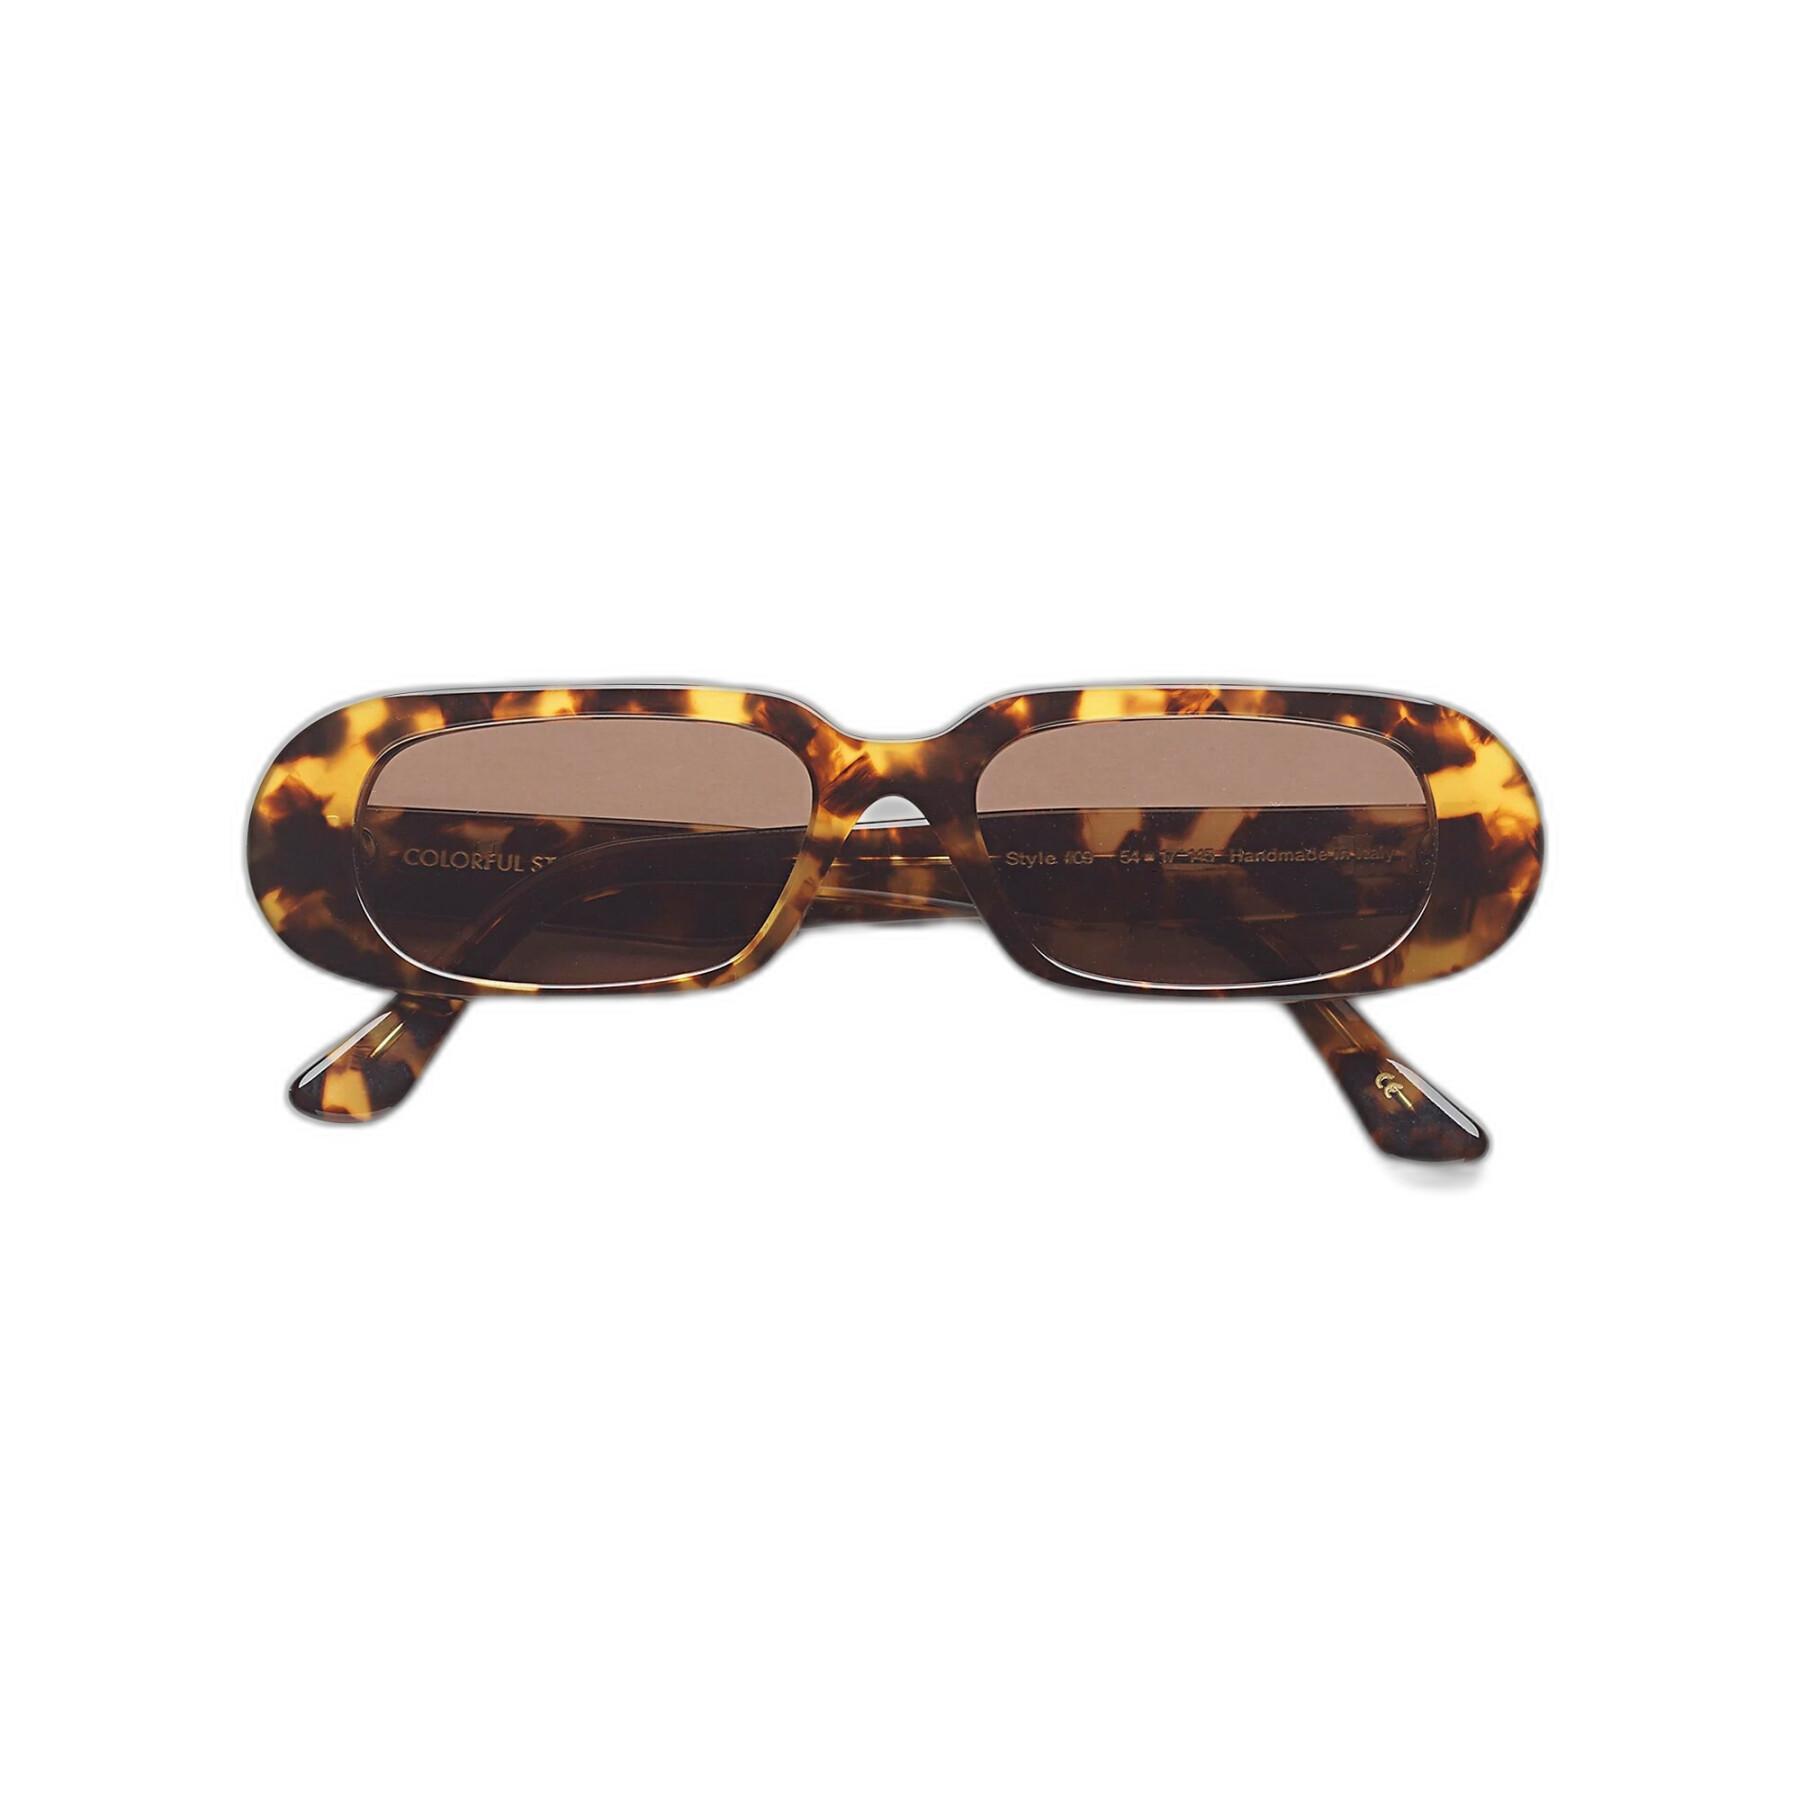 Okulary przeciwsłoneczne Colorful Standard 09 classic havana/brown